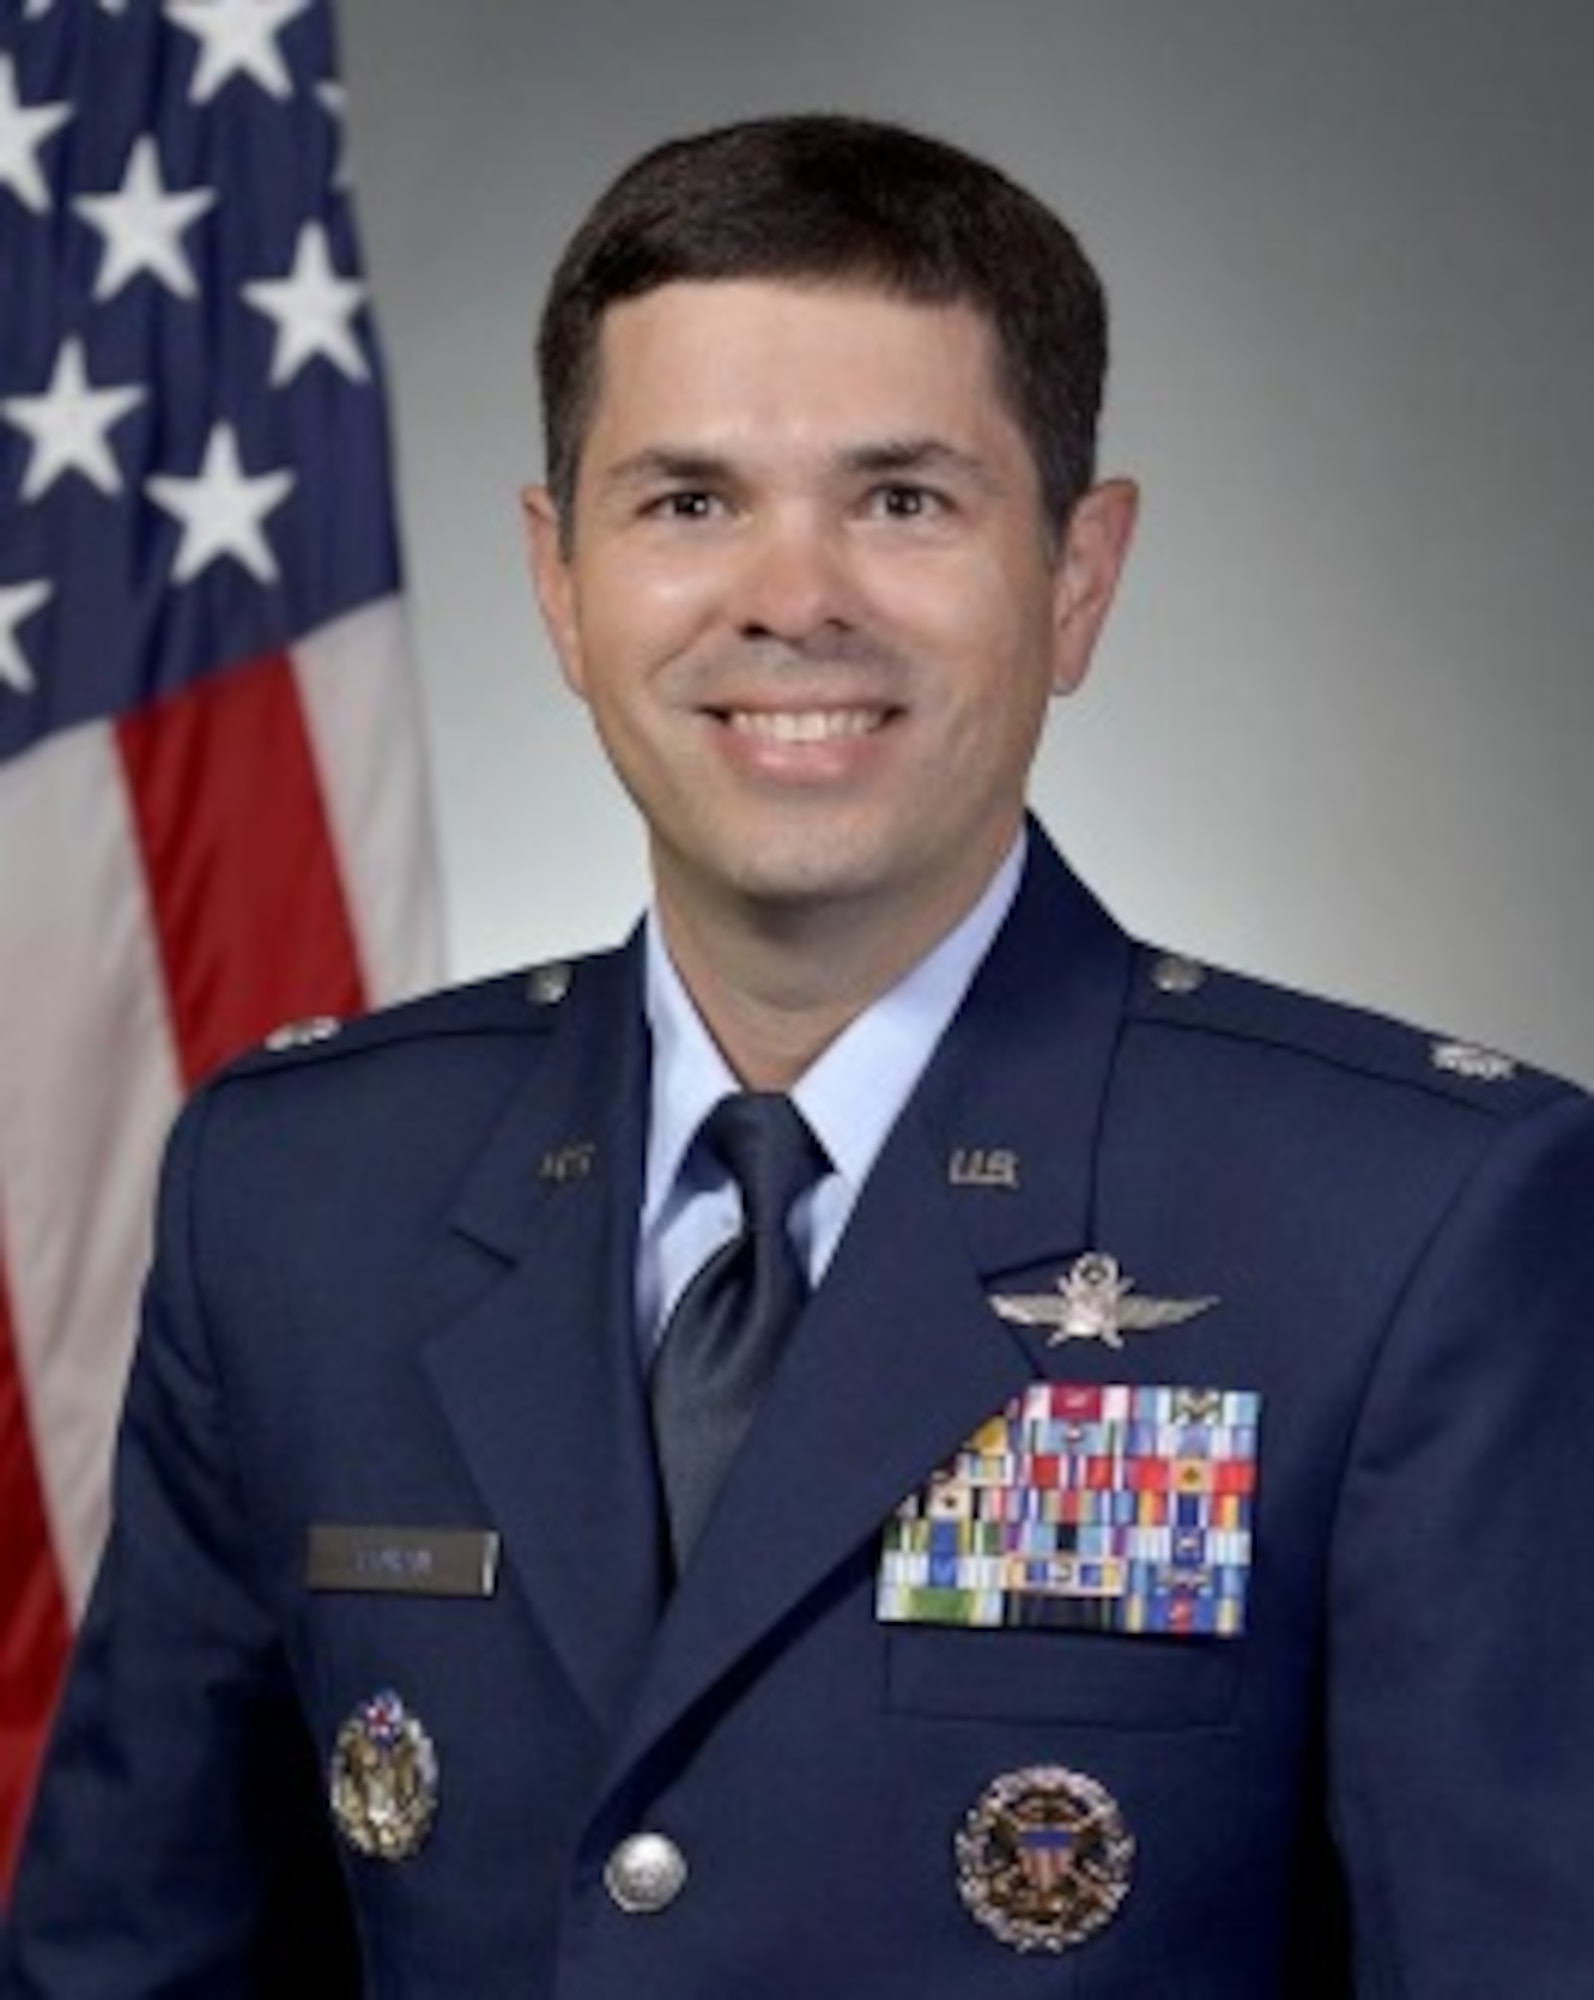 Lt. Col. Emanuel Cohan